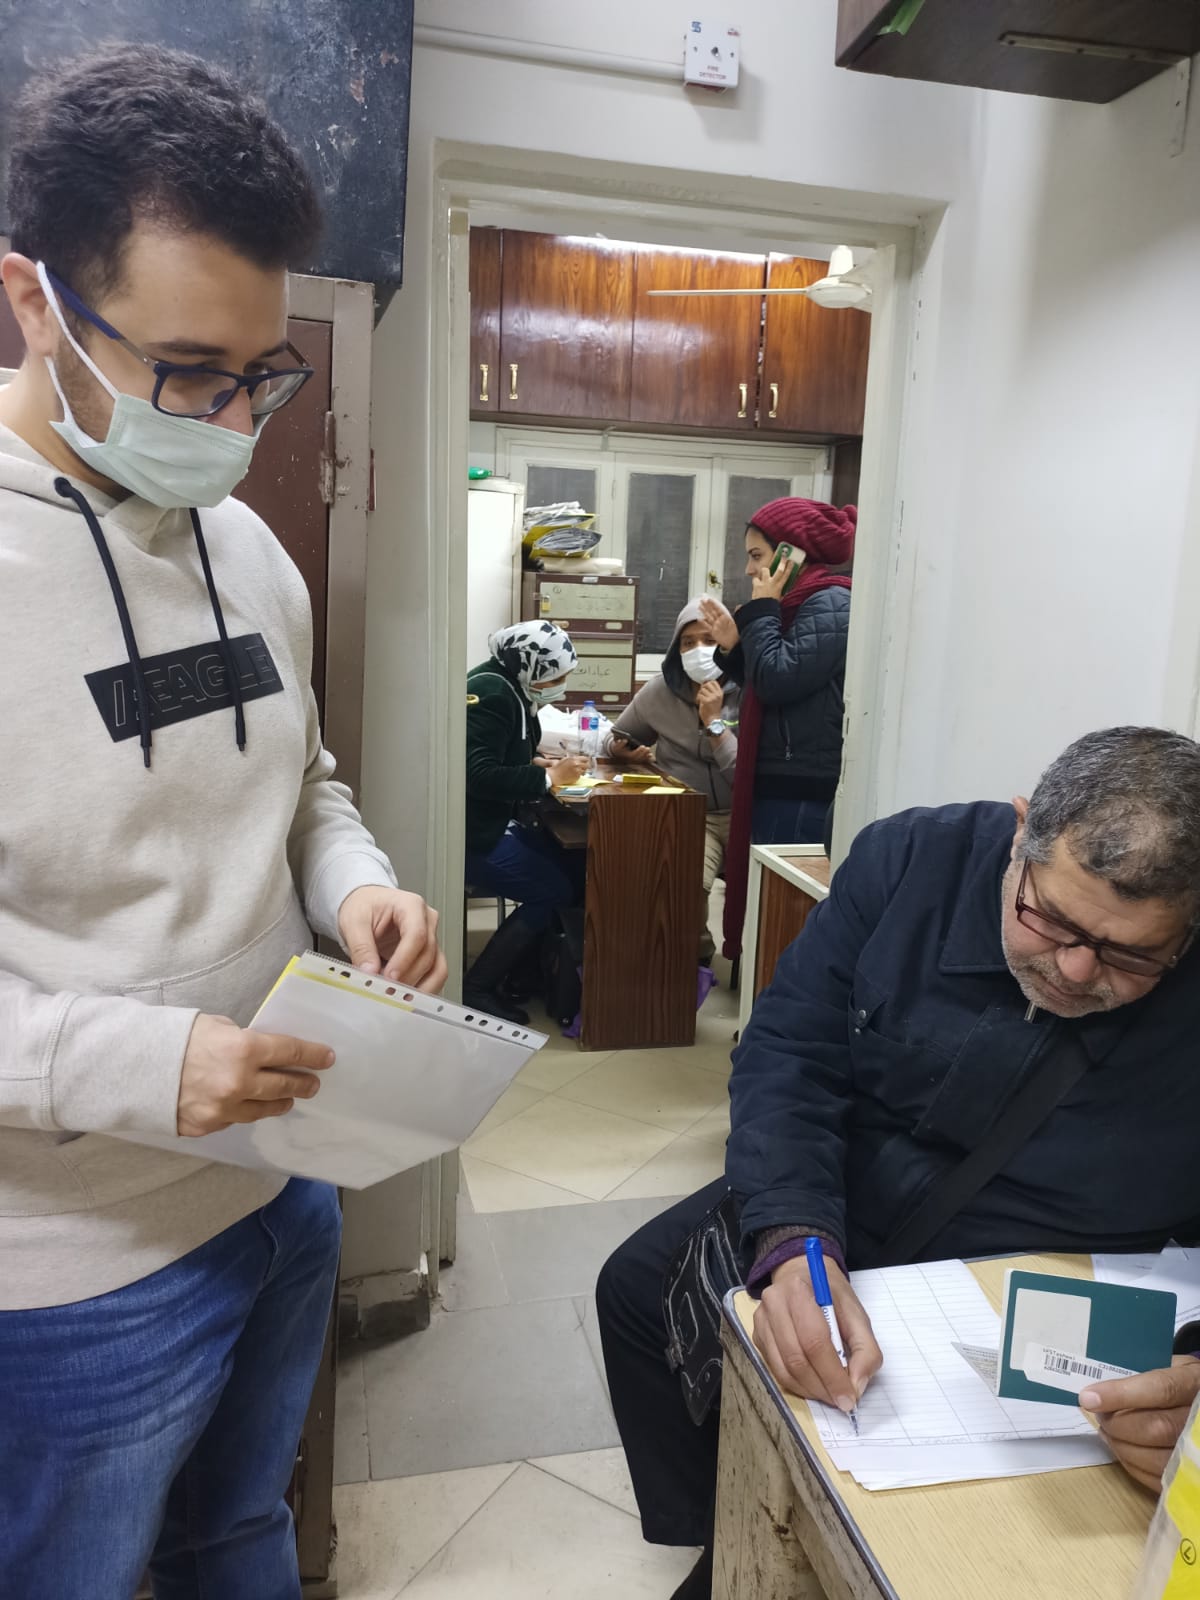 اقبال الجماهير المسافرين لتشجيع مصر على الوحدات الصحية لعمل المسحة (4)